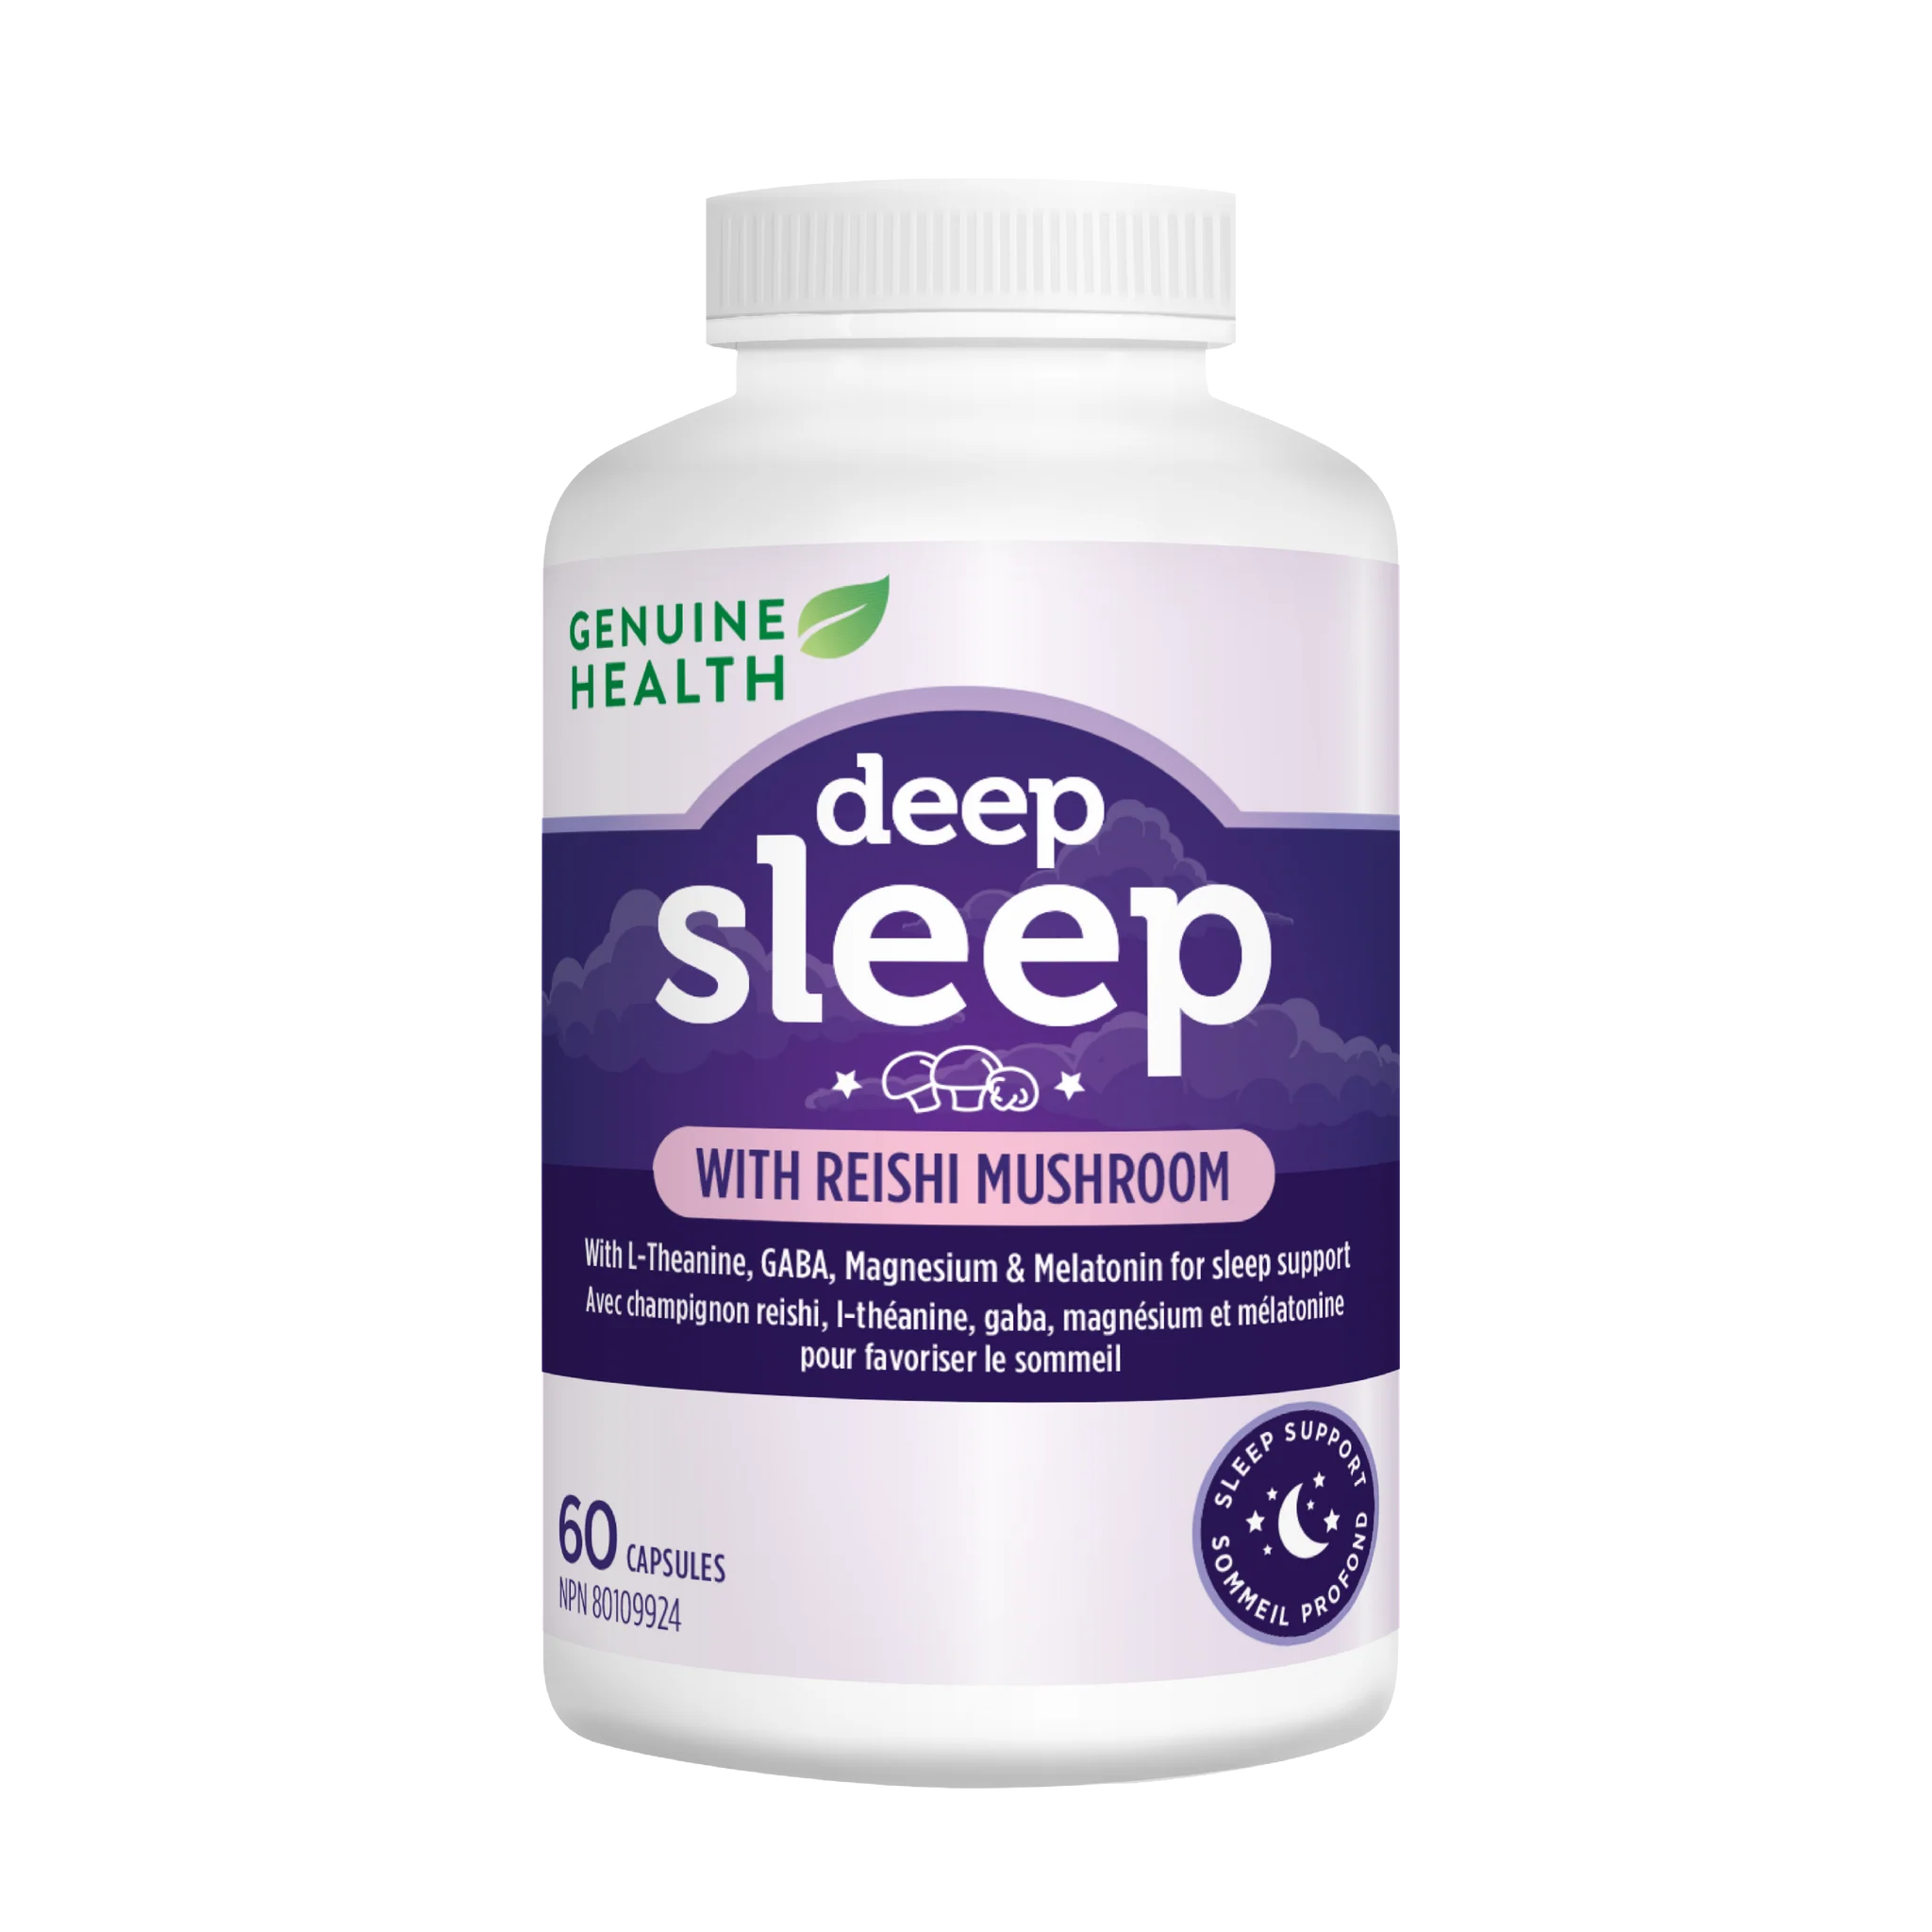 Deep sleep - Deep sleep